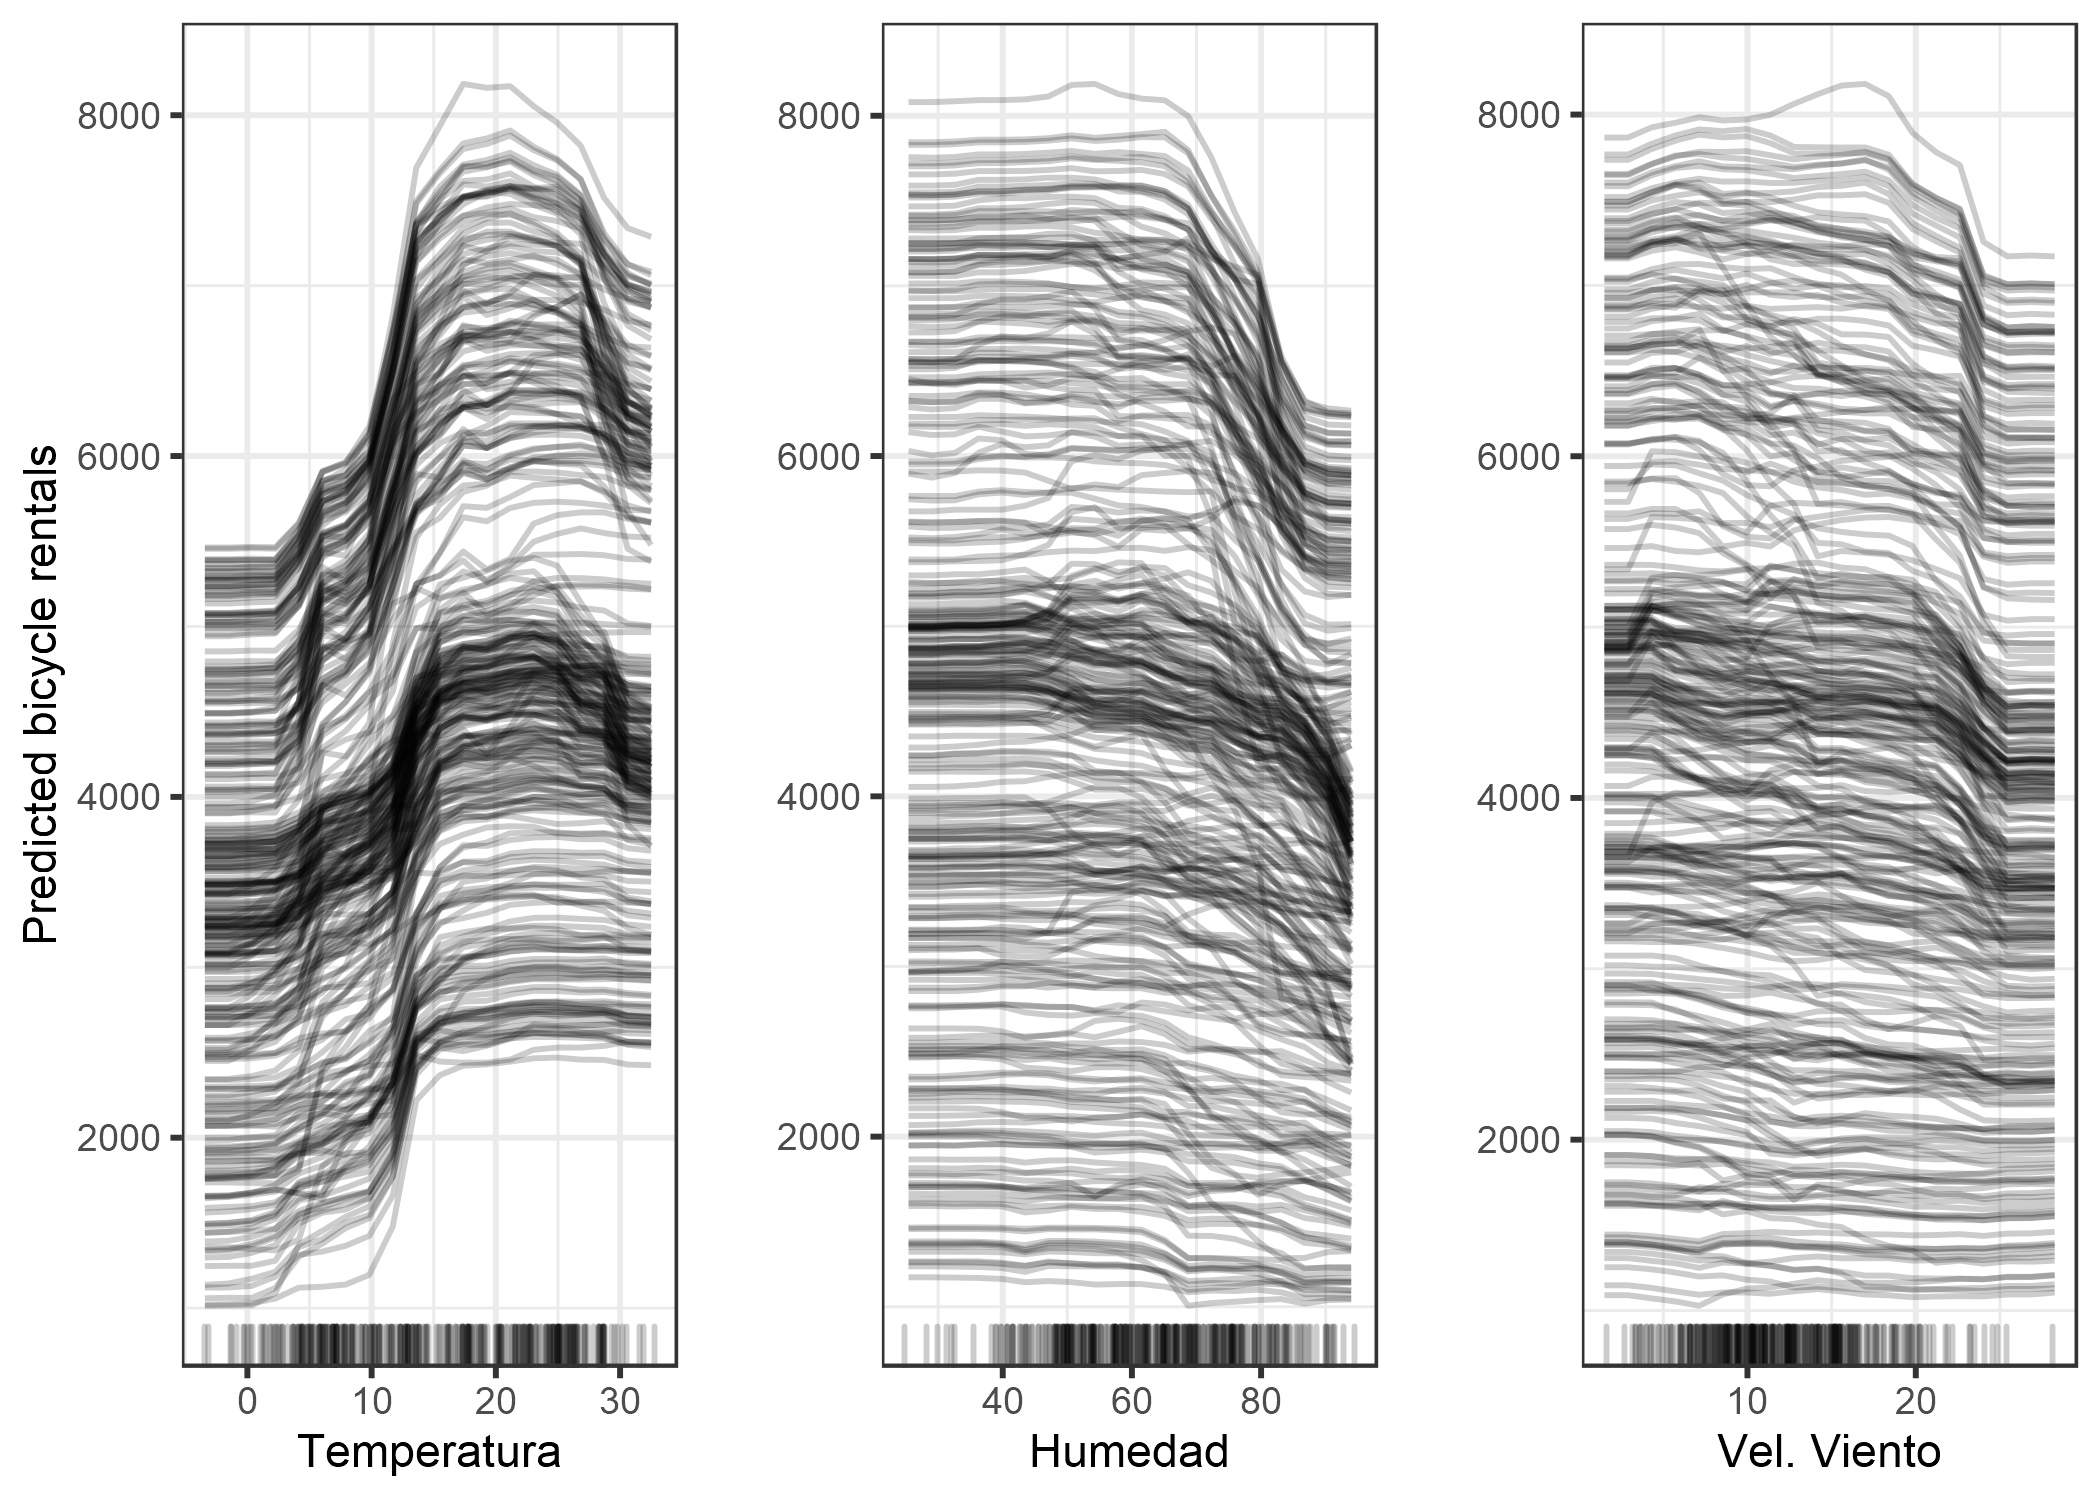 Gráfico ICE para el alquiler de bicicletas previsto por las condiciones climáticas. Se pueden observar los mismos efectos que en los gráficos de dependencia parcial.